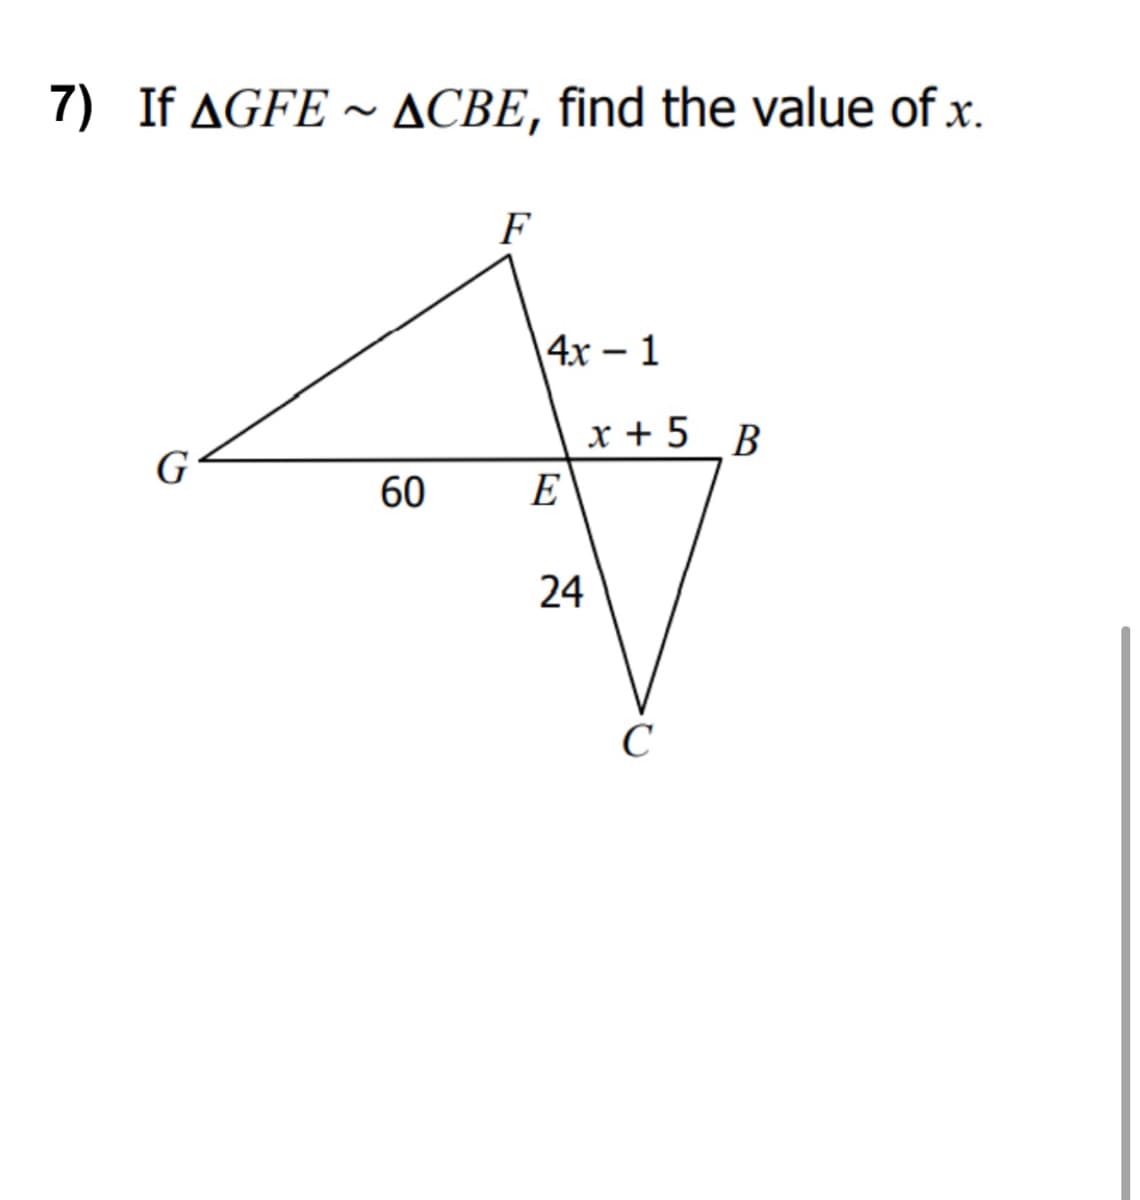 7) If AGFE ~ ACBE, find the value of x.
F
4х - 1
x + 5 B
G
60
E
24
C
